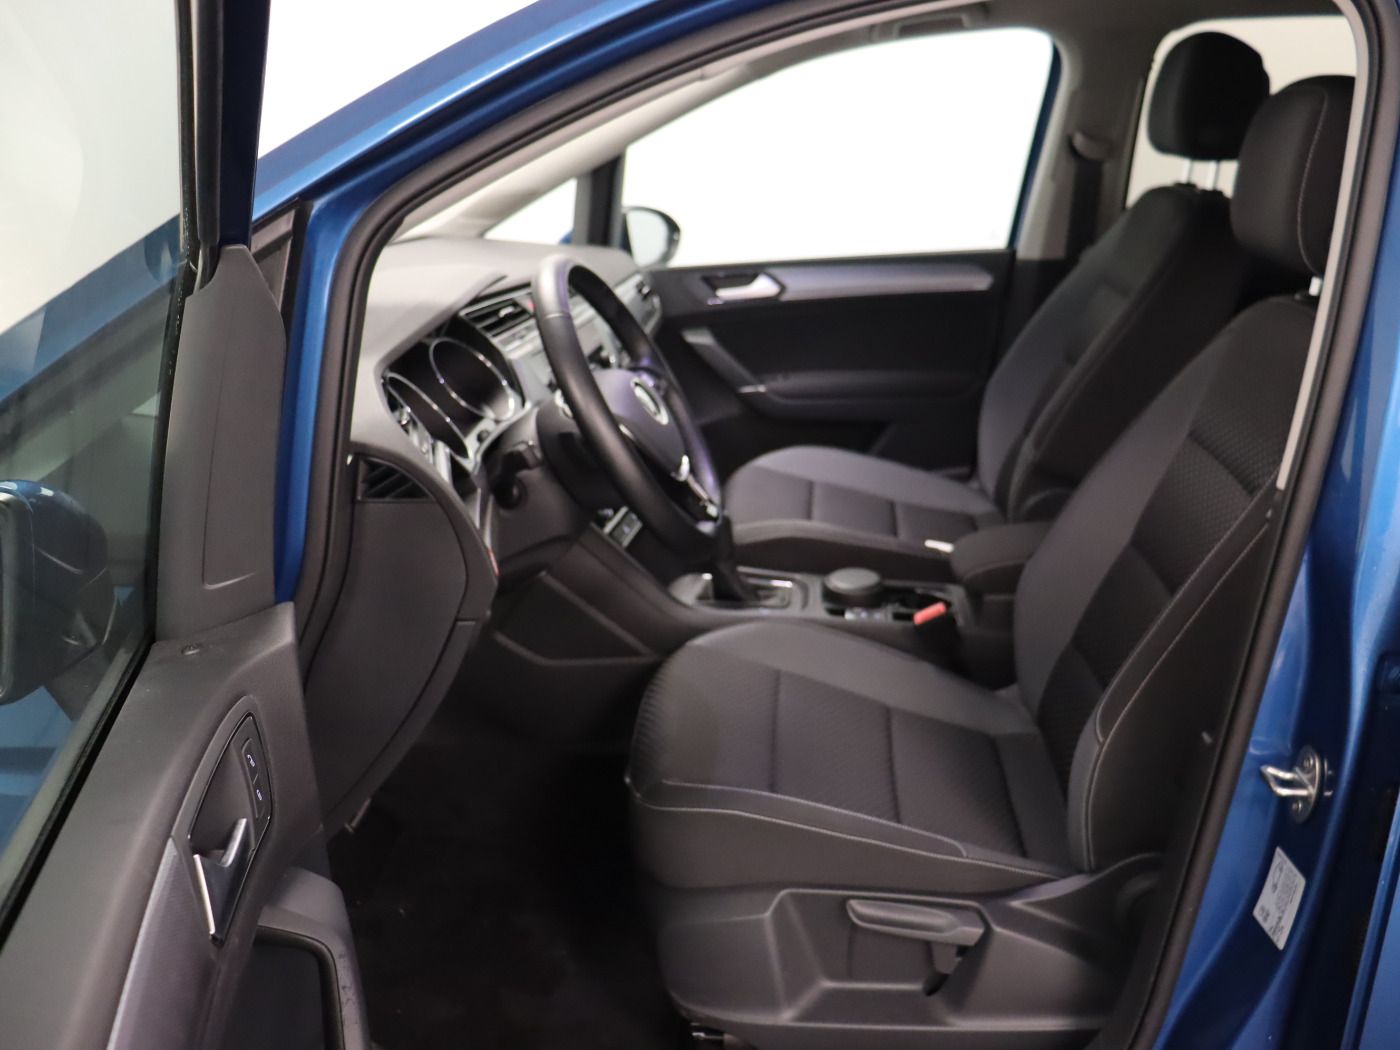 Fahrzeugabbildung Volkswagen Touran 2.0 TDI DSG Comfortline ACTIVE Navi AHK